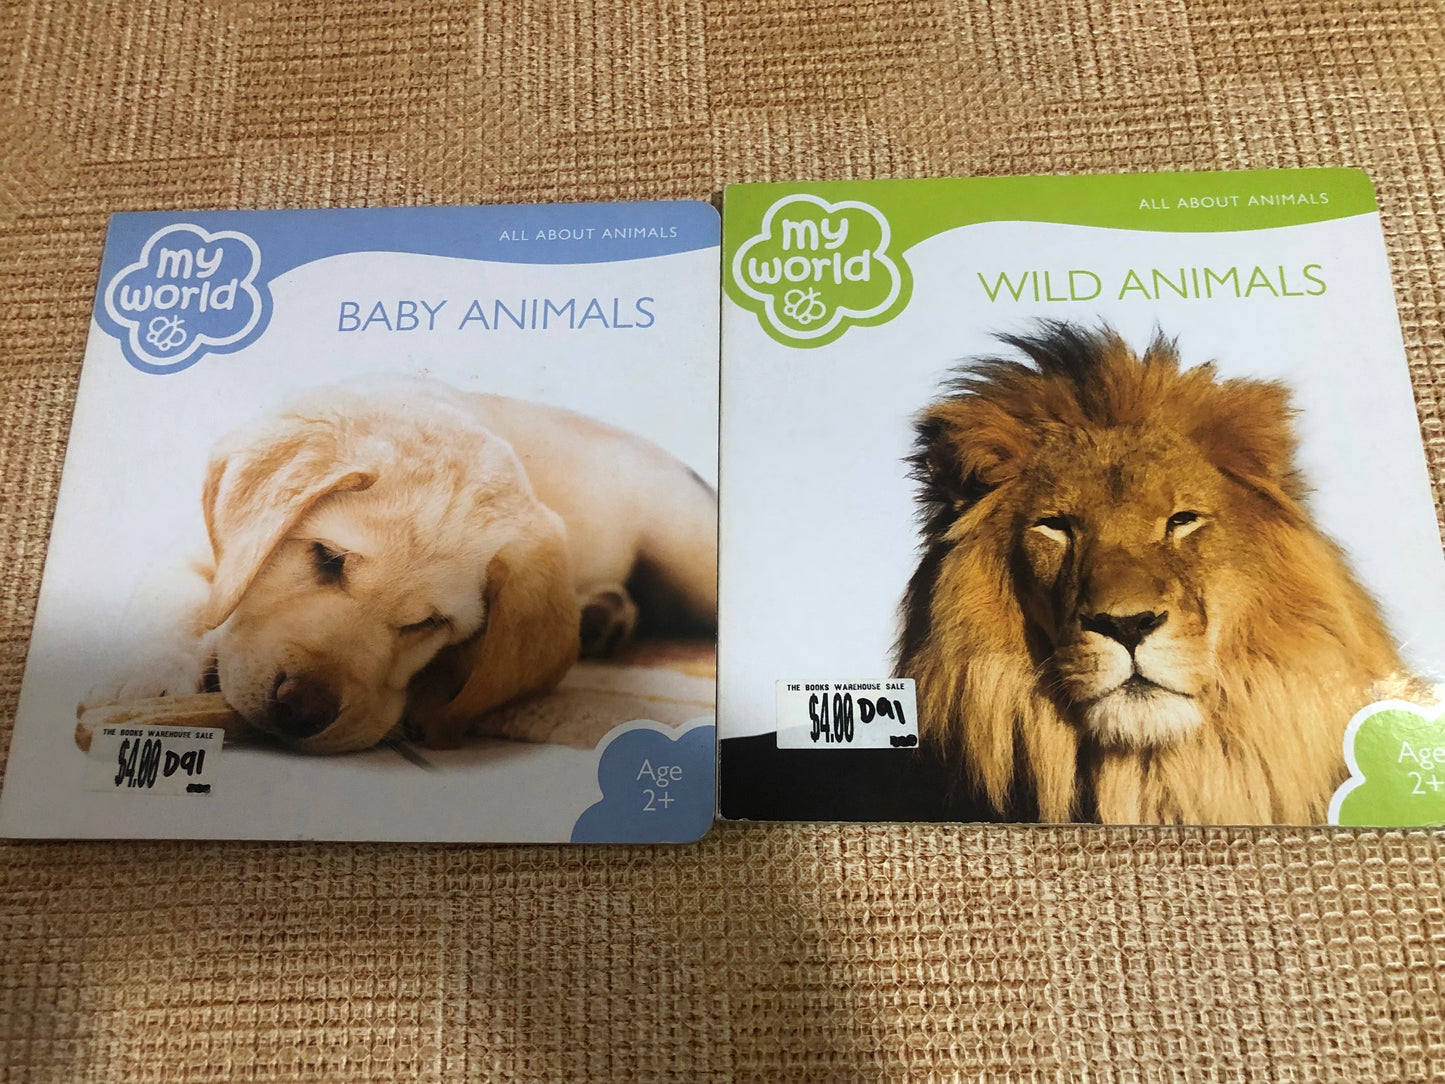 My World - Baby Animals & Wild Animals